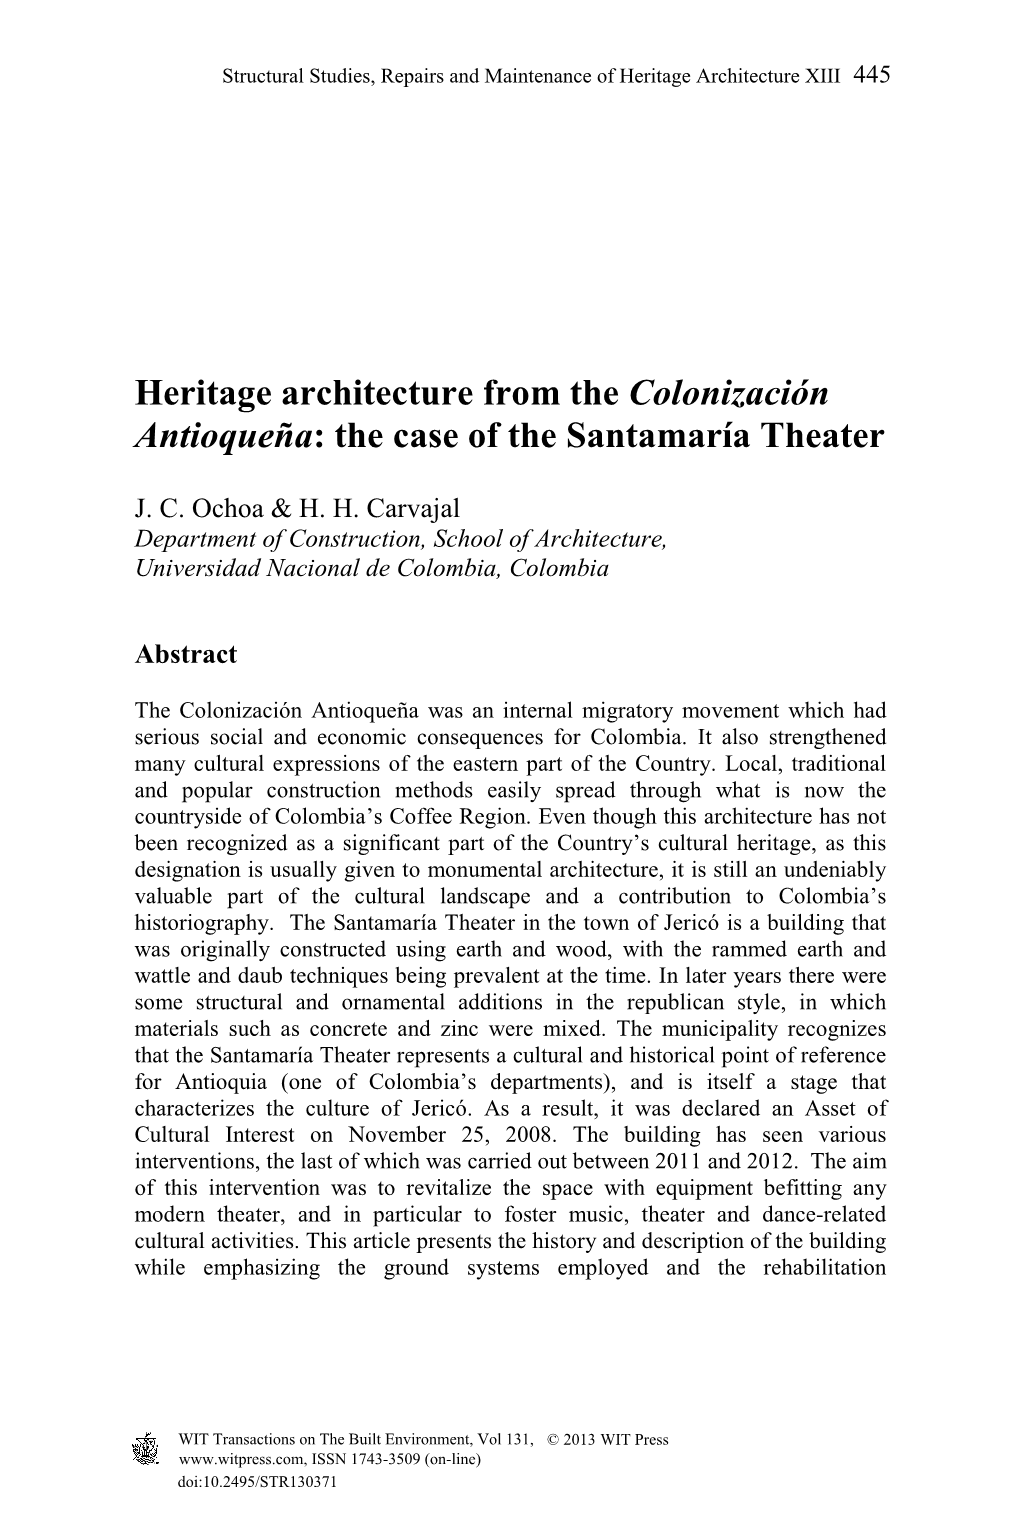 Heritage Architecture from the Colonización Antioqueña: the Case of the Santamaría Theater